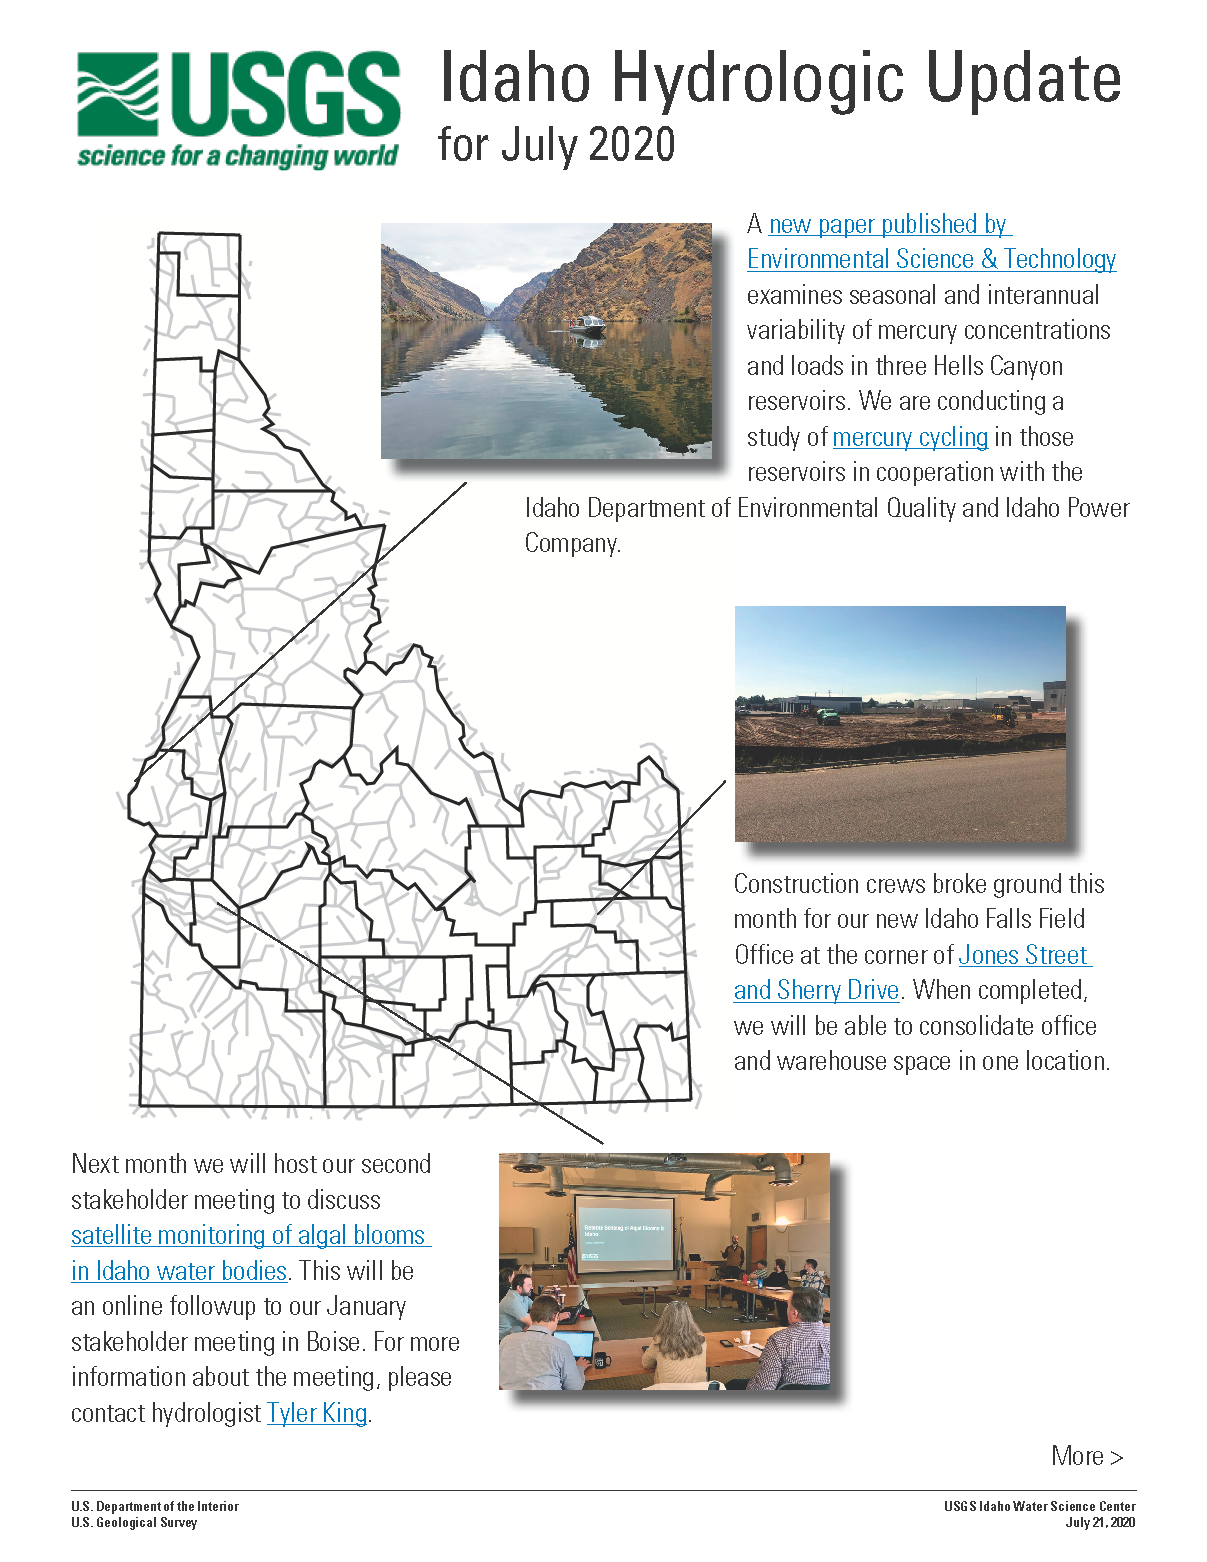 Idaho Hydrologic Update, July 2020